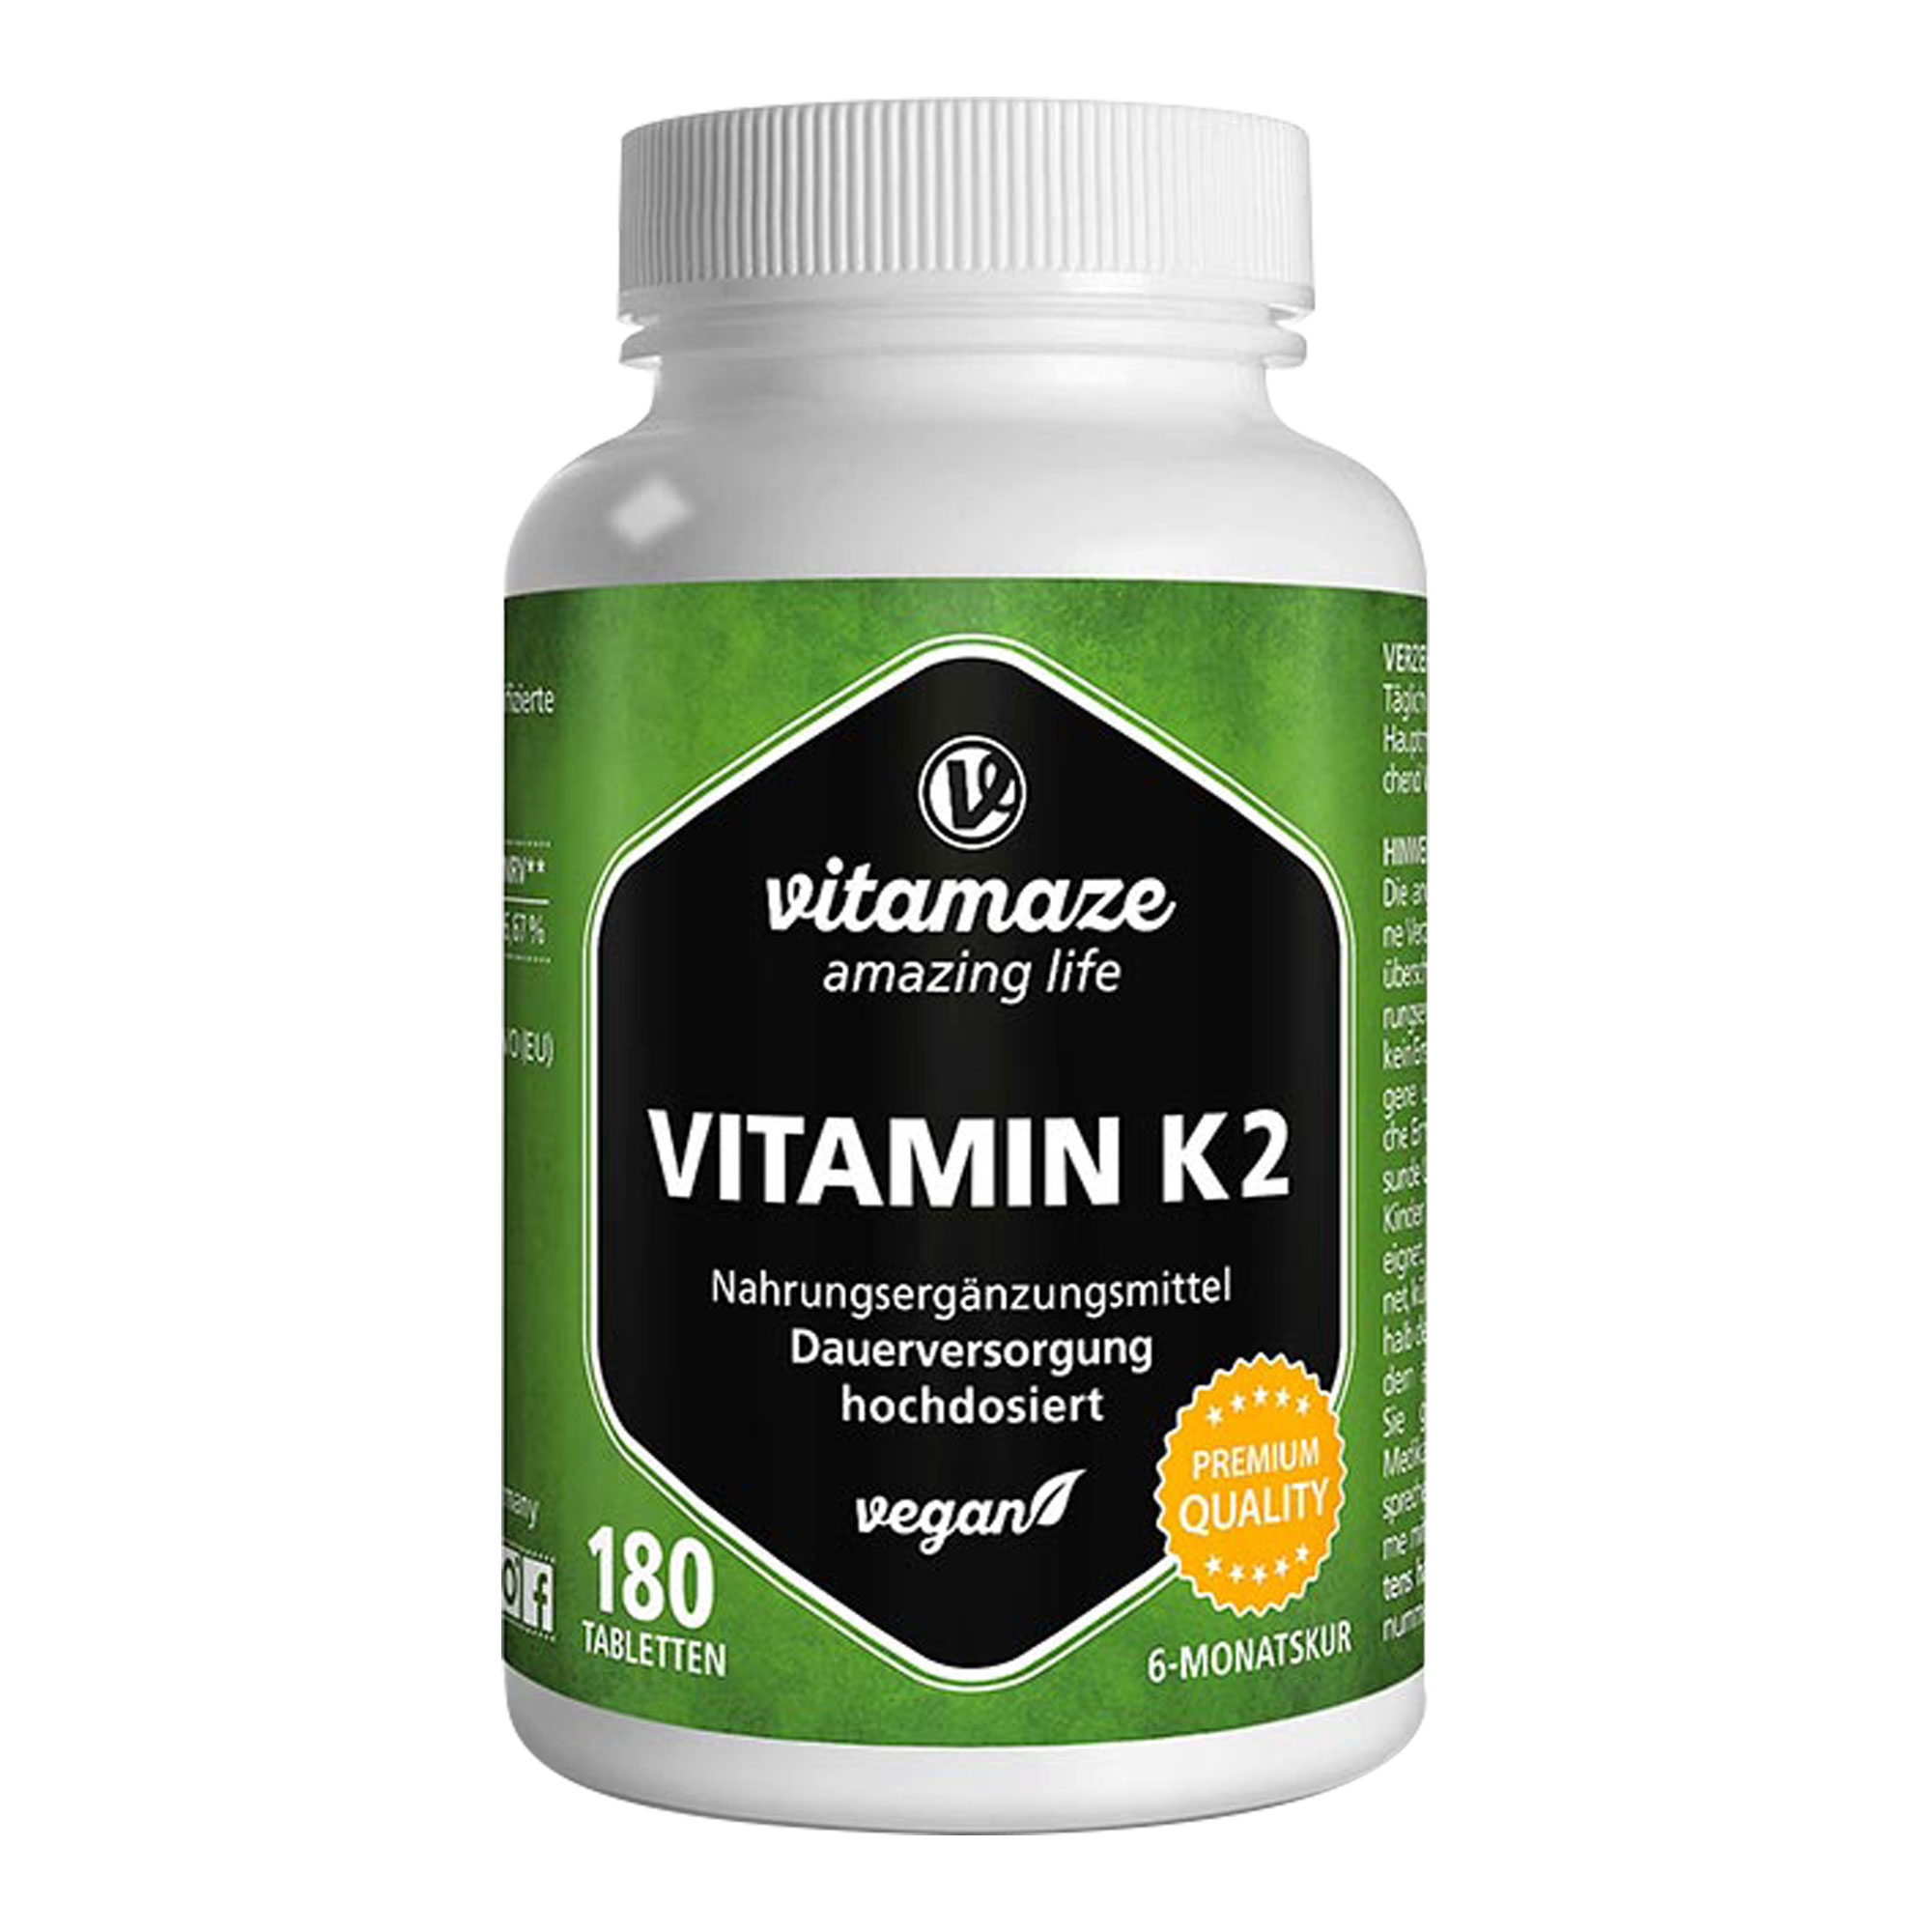 Nahrungsergänzungsmittel mit hochdosiertem Vitamin K2. Für 6 Monate Dauerversorgung.